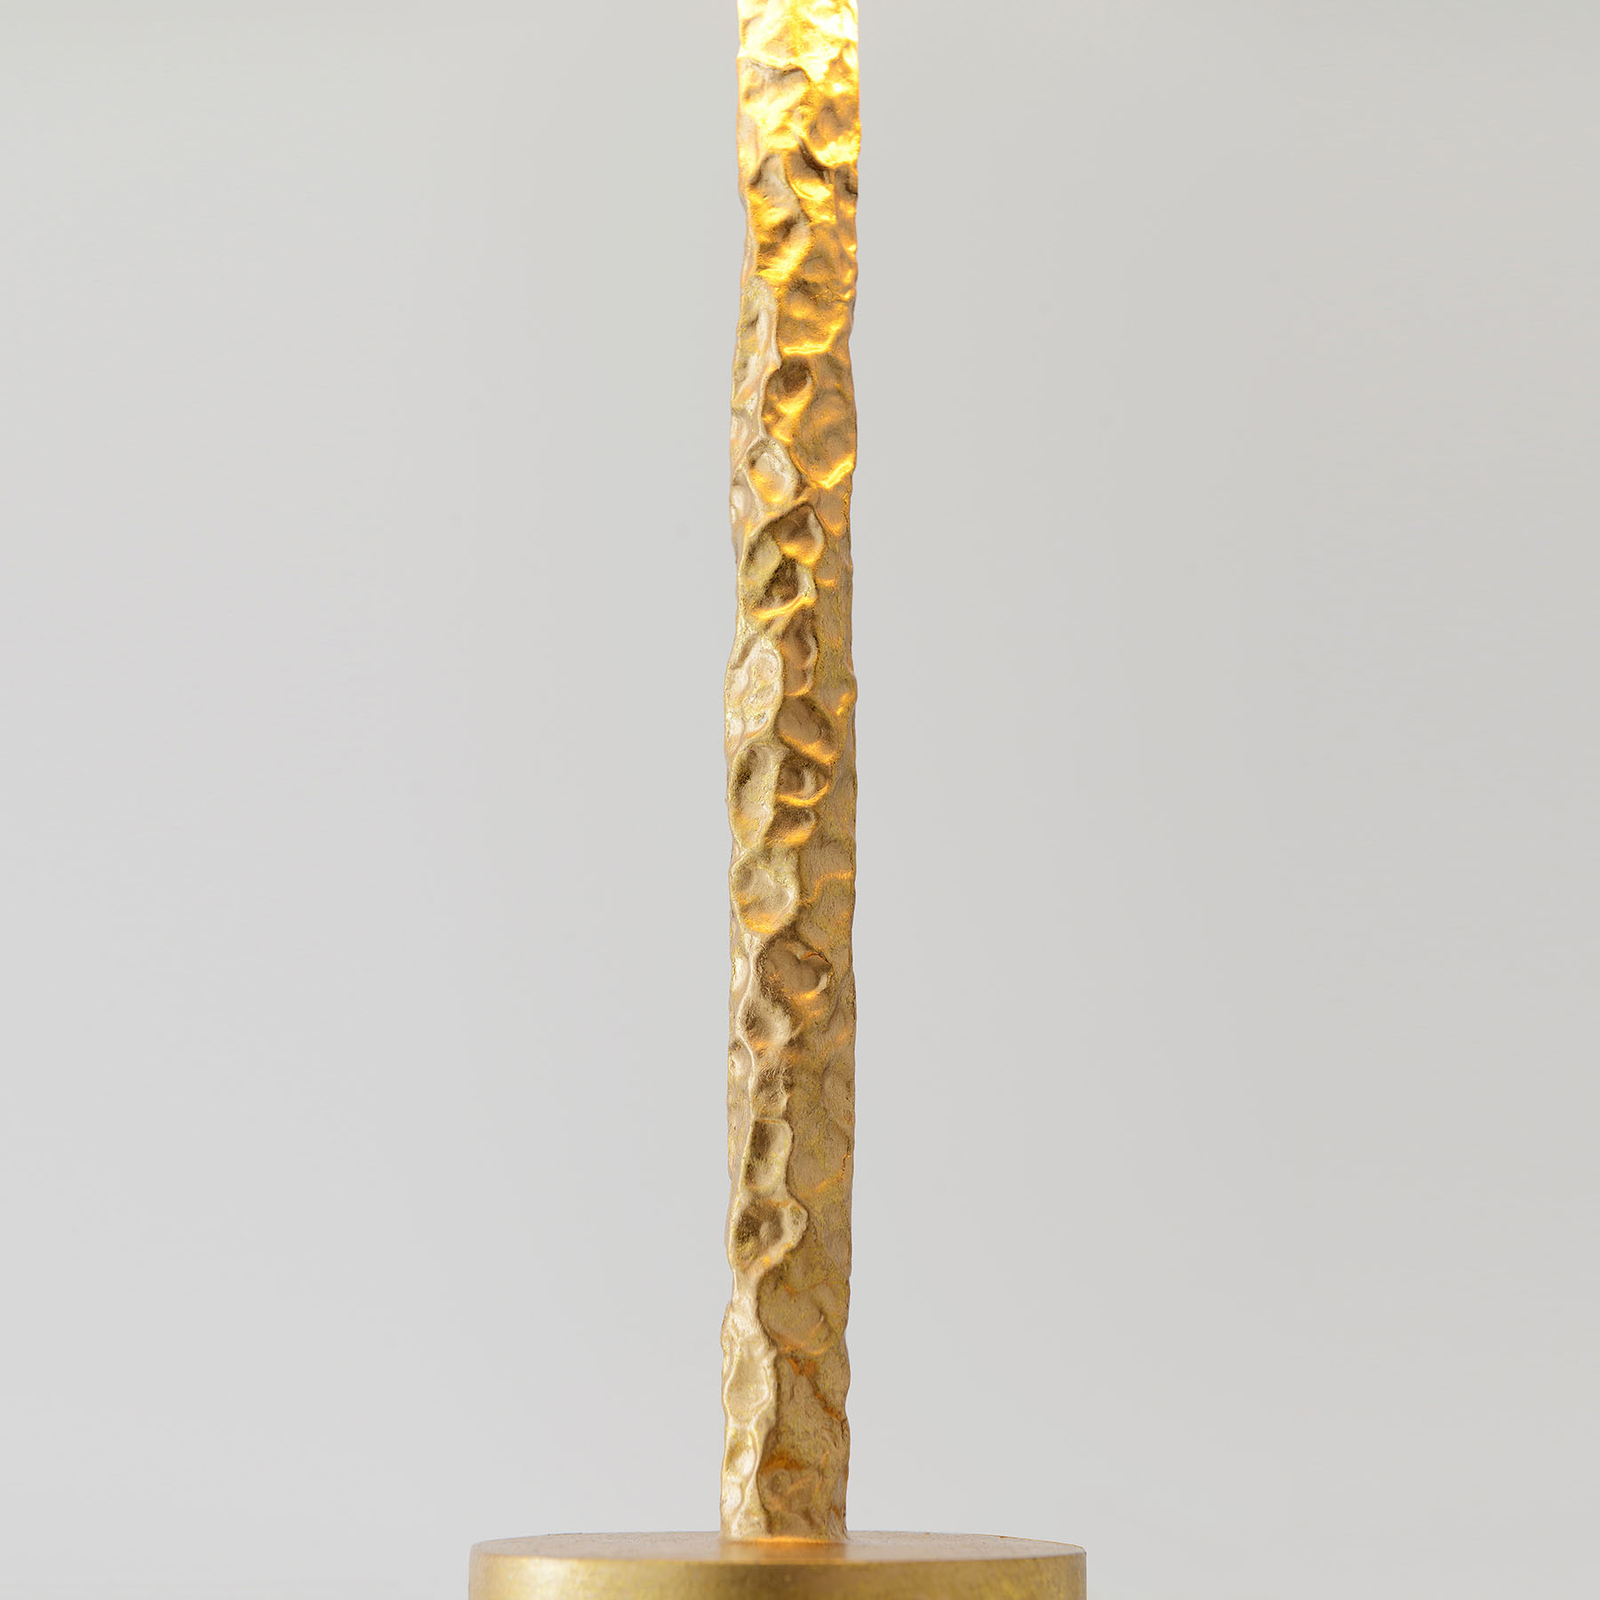 Lampe table Cancelliere Rotonda noire/dorée 57 cm